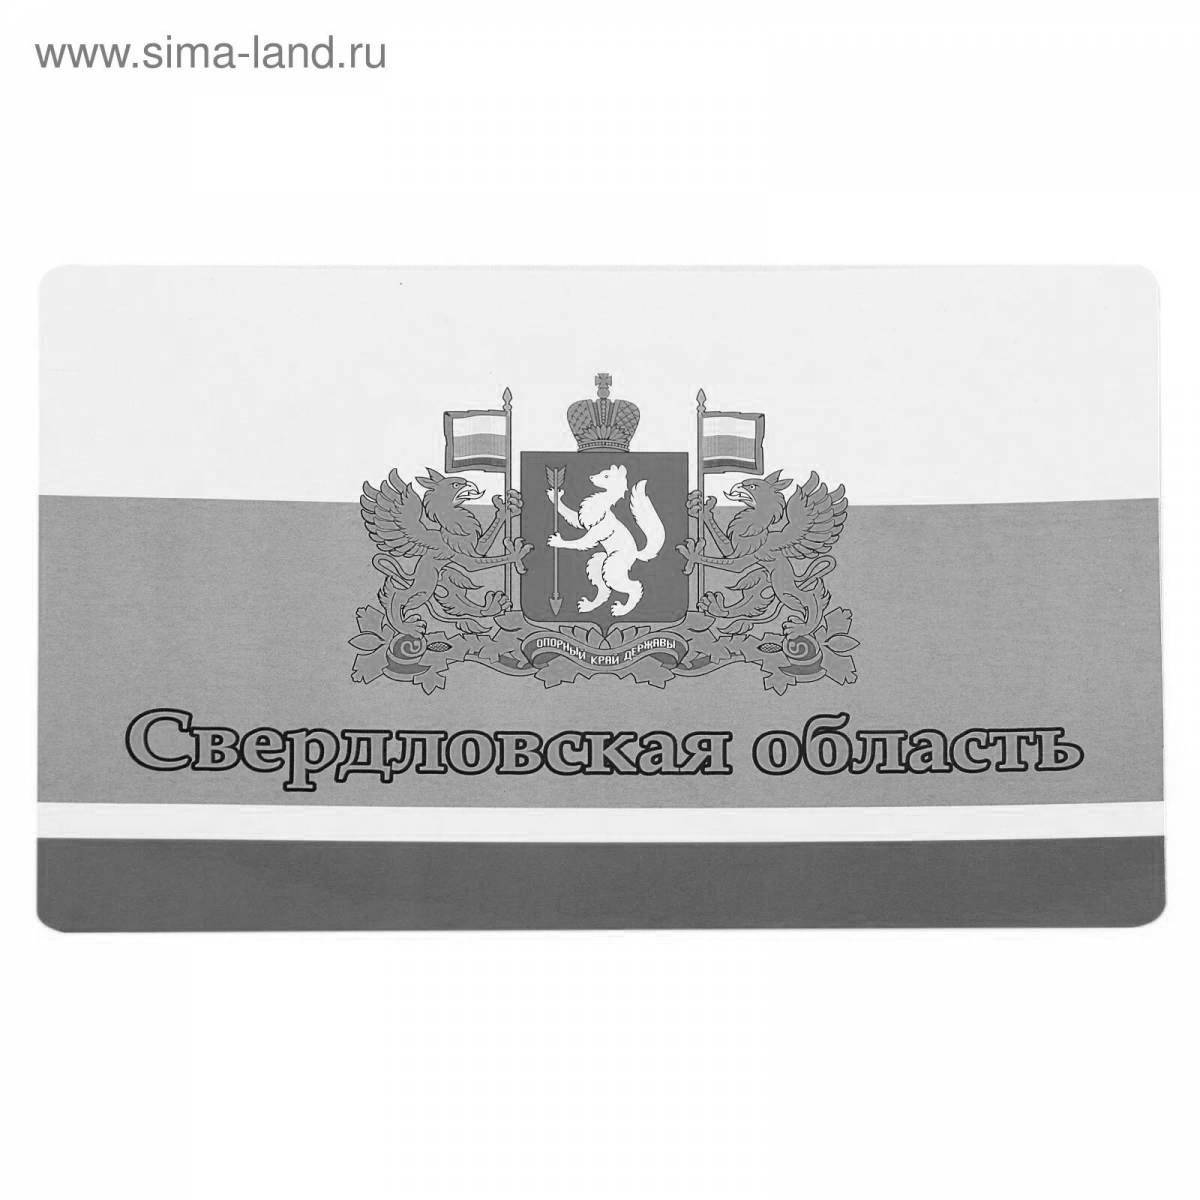 Colorful flag of the Sverdlovsk region